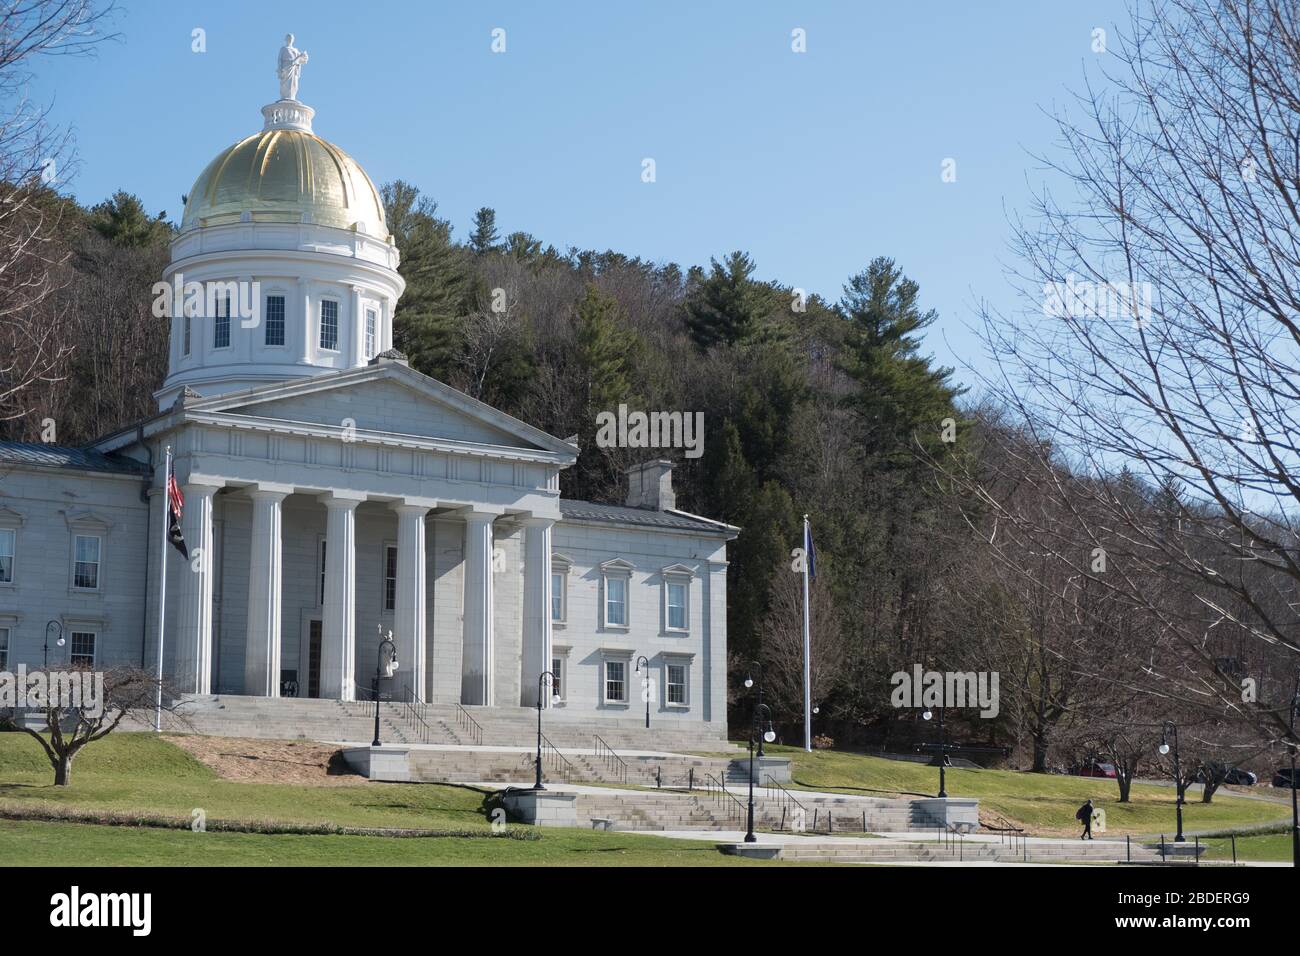 Vermont State House, Montpelier, VT, USA, Hauptstadt von Vermont, während des Aufenthalts - zu Hause Ordnung sieht verlassen Straßen und soziale Distanzierung in der Innenstadt. Stockfoto